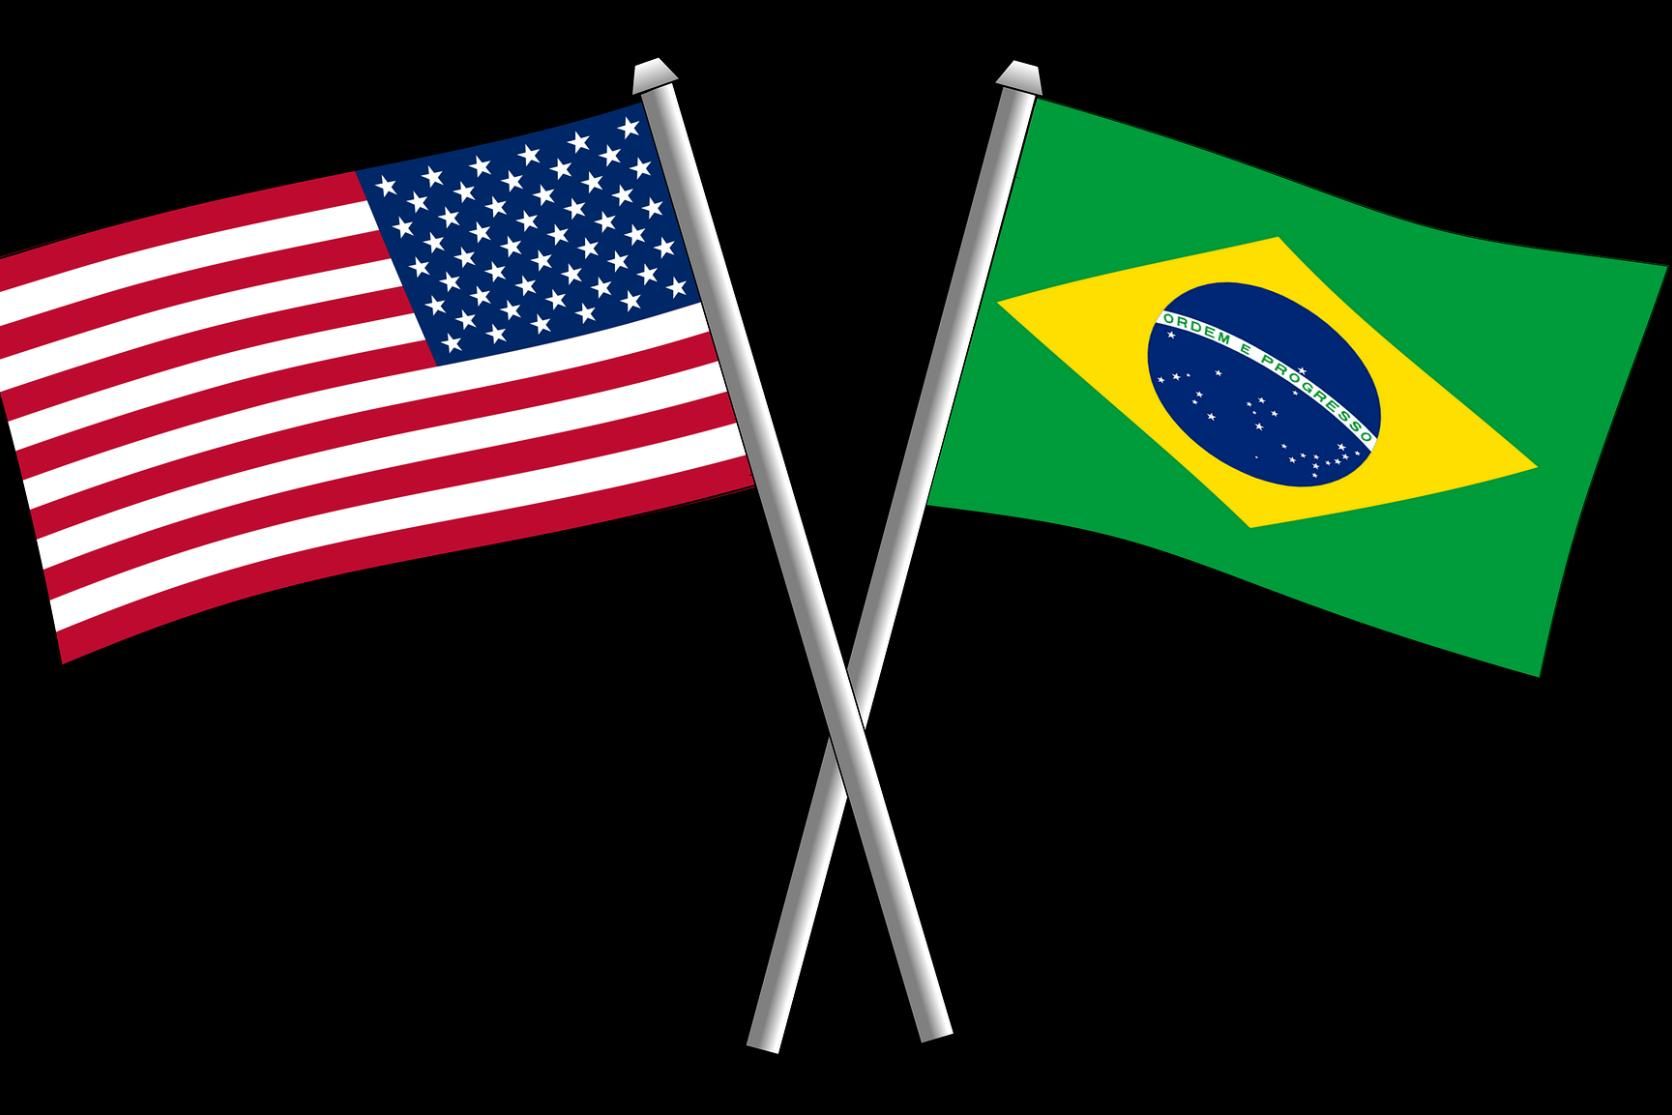 O dilema do brasileiro adotado aos 5 anos deportado dos EUA que não fala  português